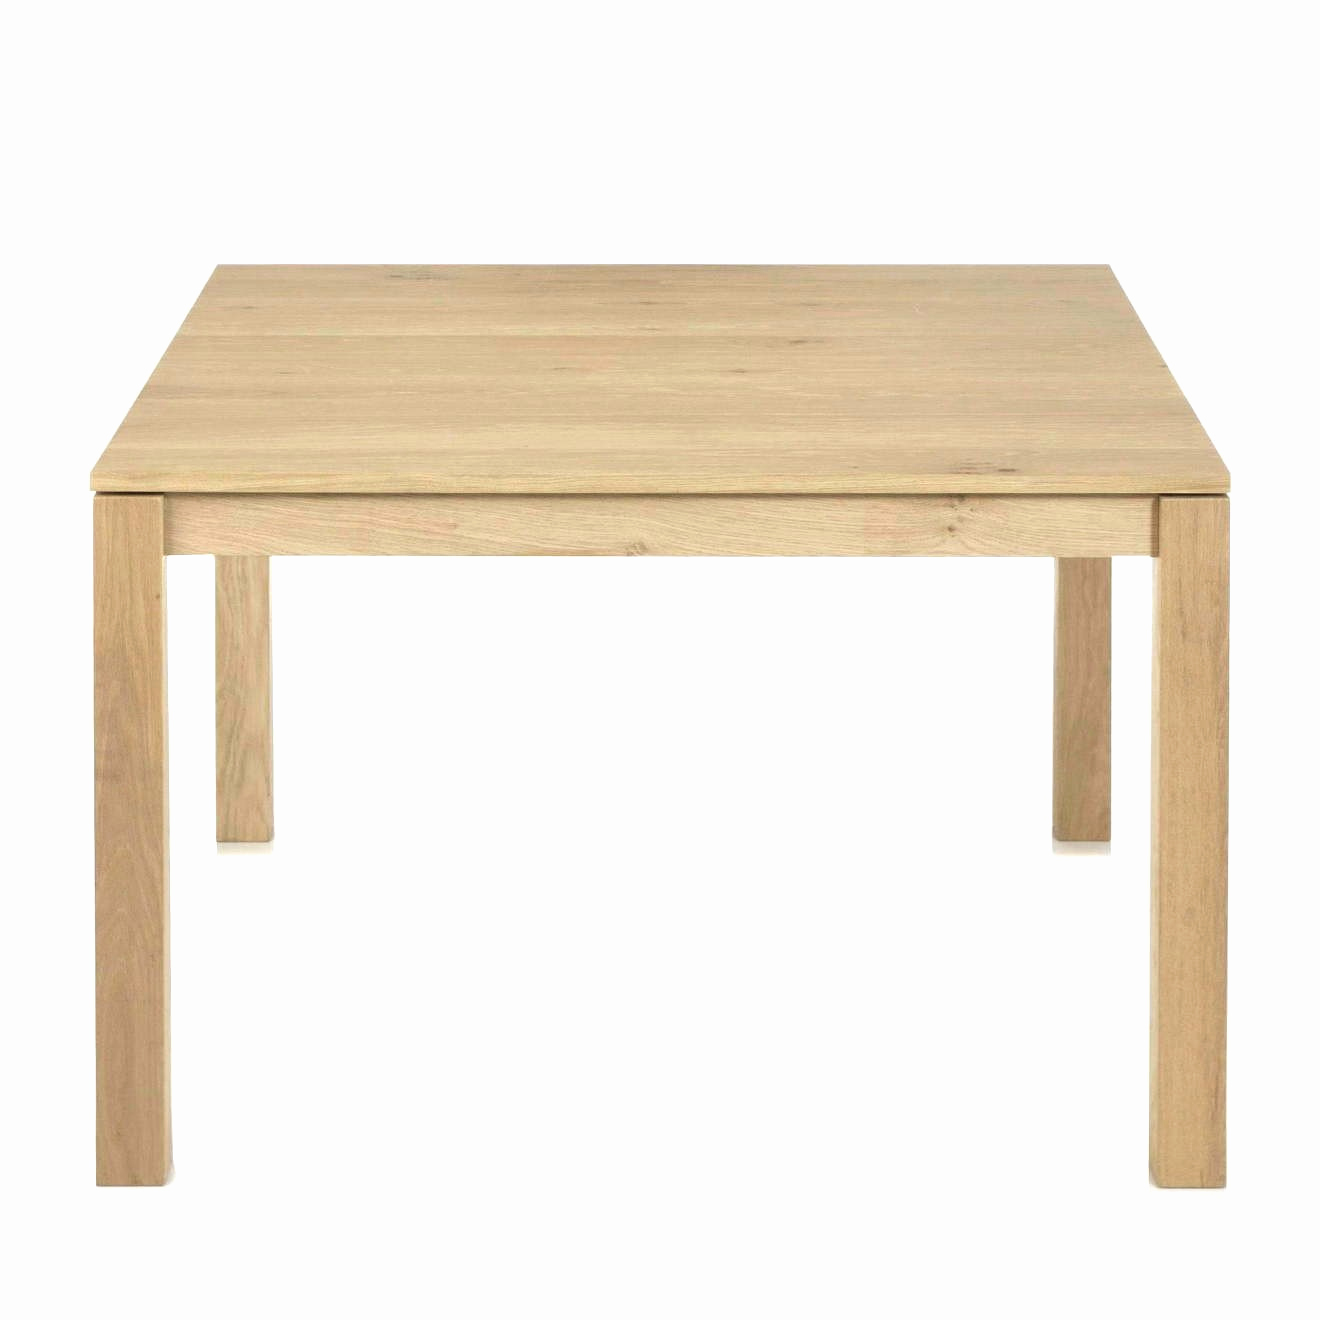 fabriquer un salon de jardin en bois beau fabriquer table de jardin bois of fabriquer un salon de jardin en bois